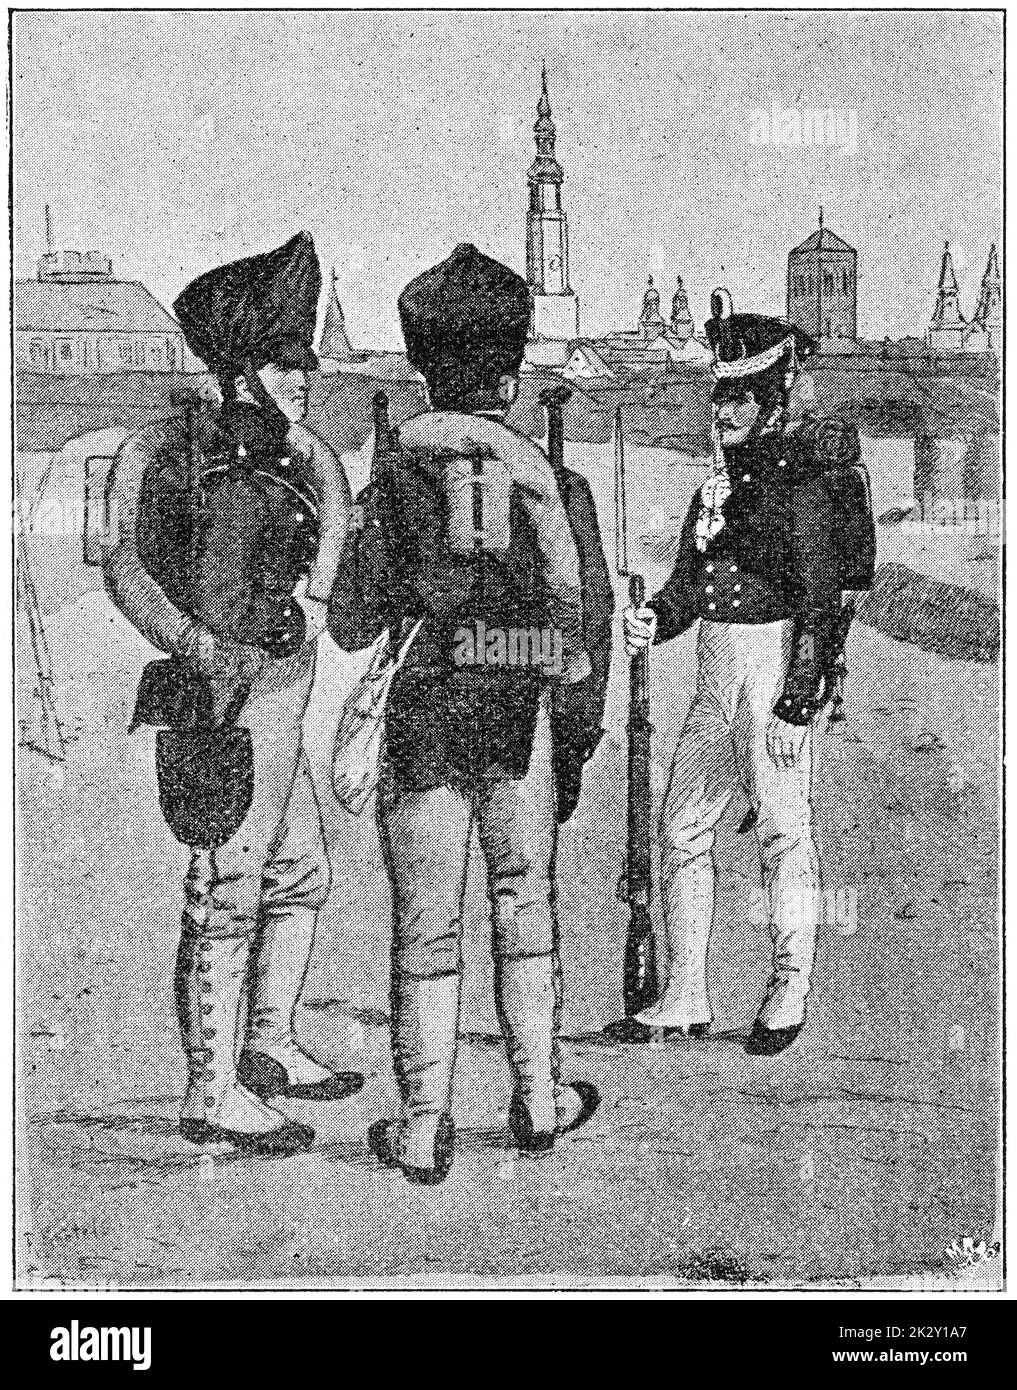 Pionniers prussiens (1830). Illustration du 19e siècle. Allemagne. Arrière-plan blanc. Banque D'Images